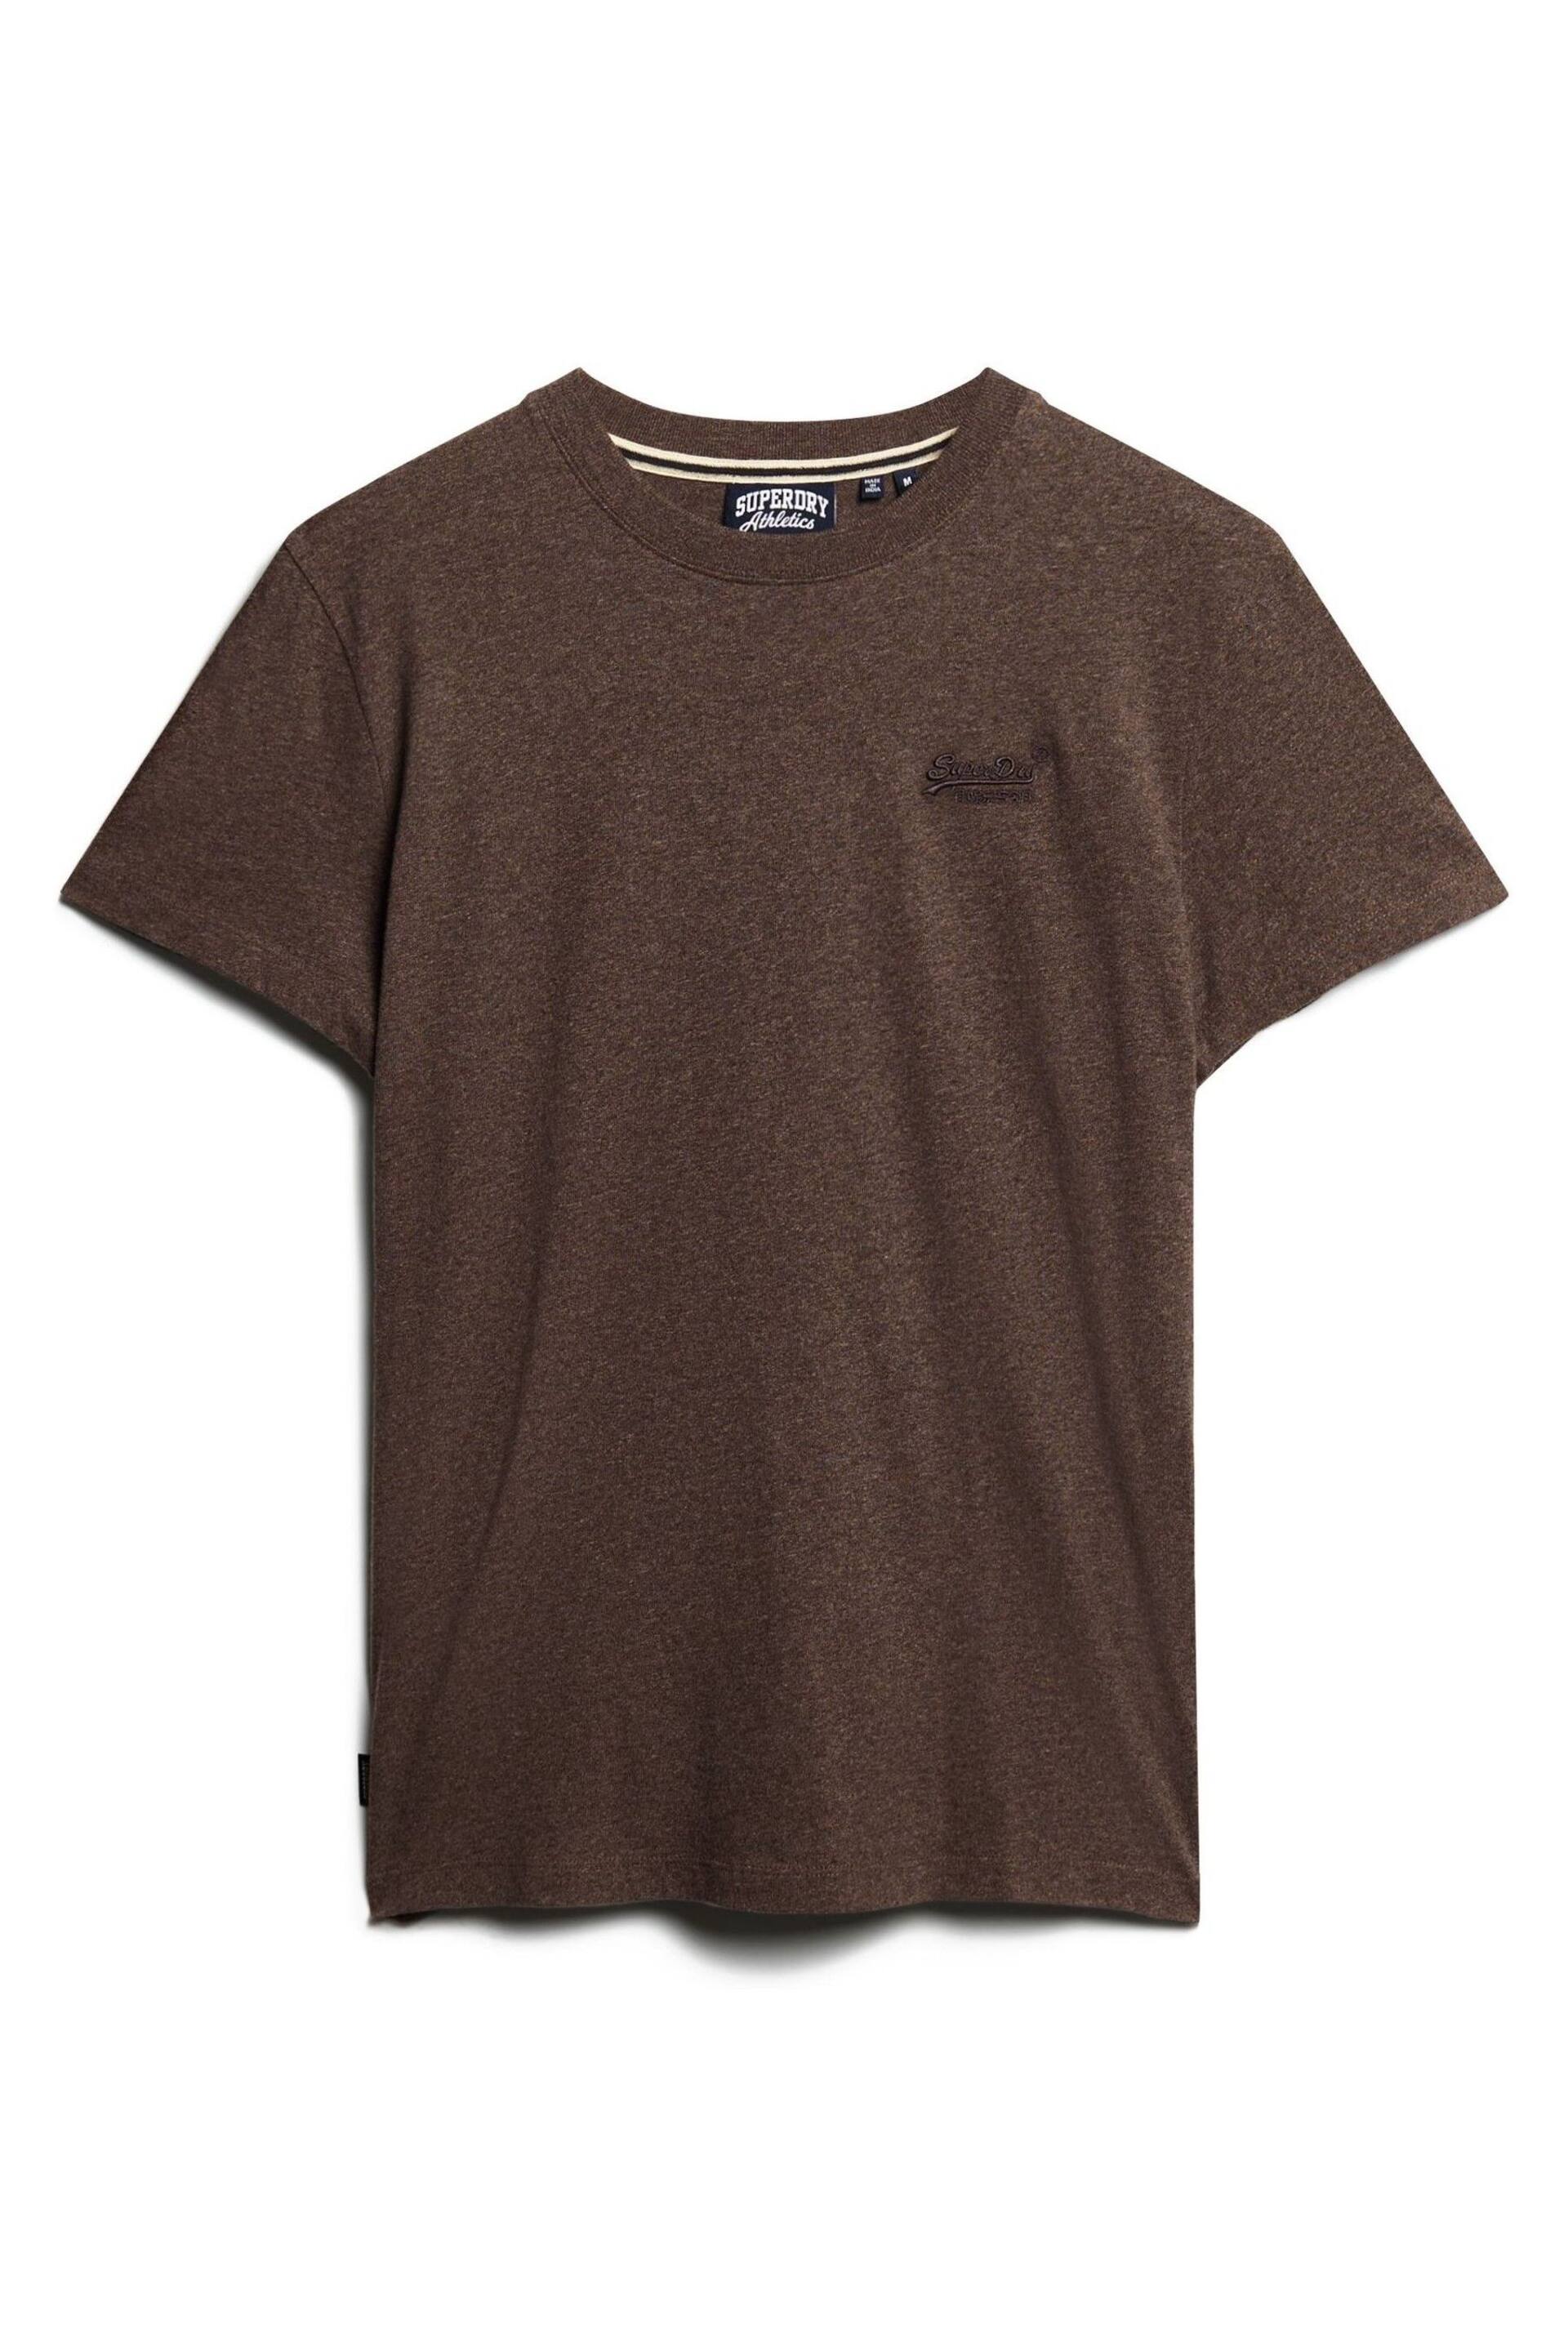 Superdry Brown Vintage Logo Emb T-Shirt - Image 4 of 11